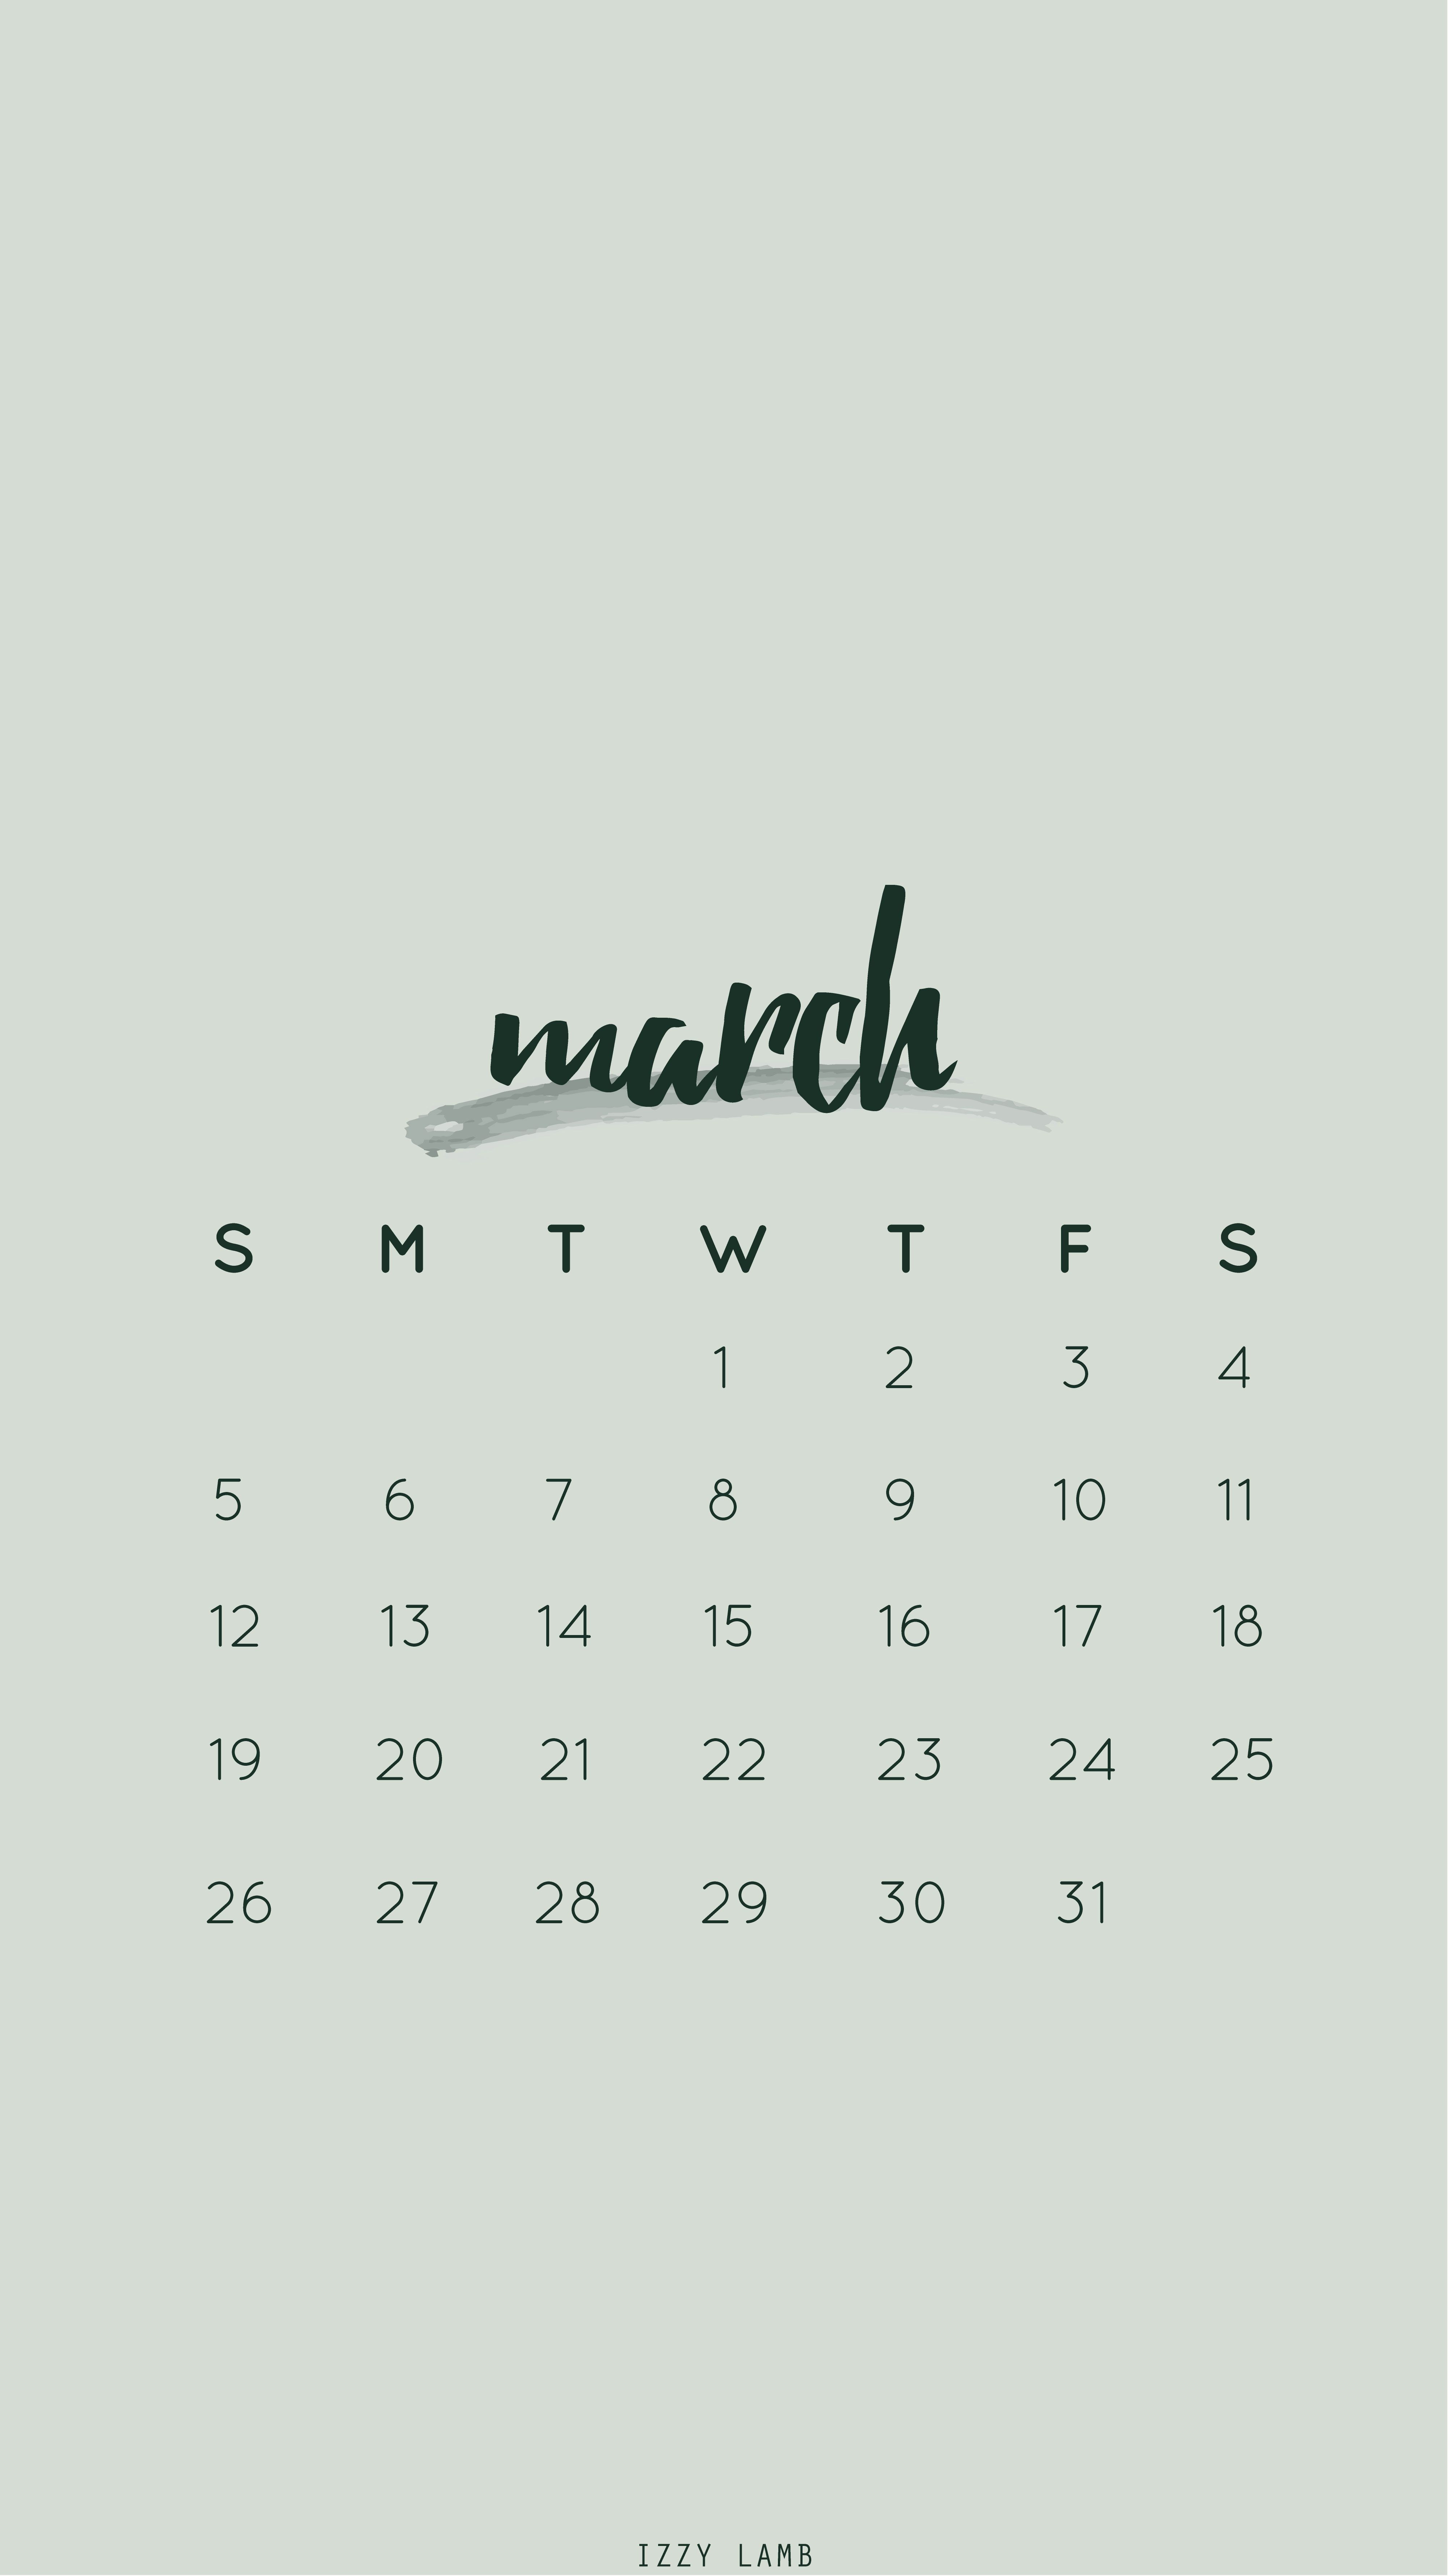 March calendar wallpaper #iphone #wallpaper #iphonewallpaper